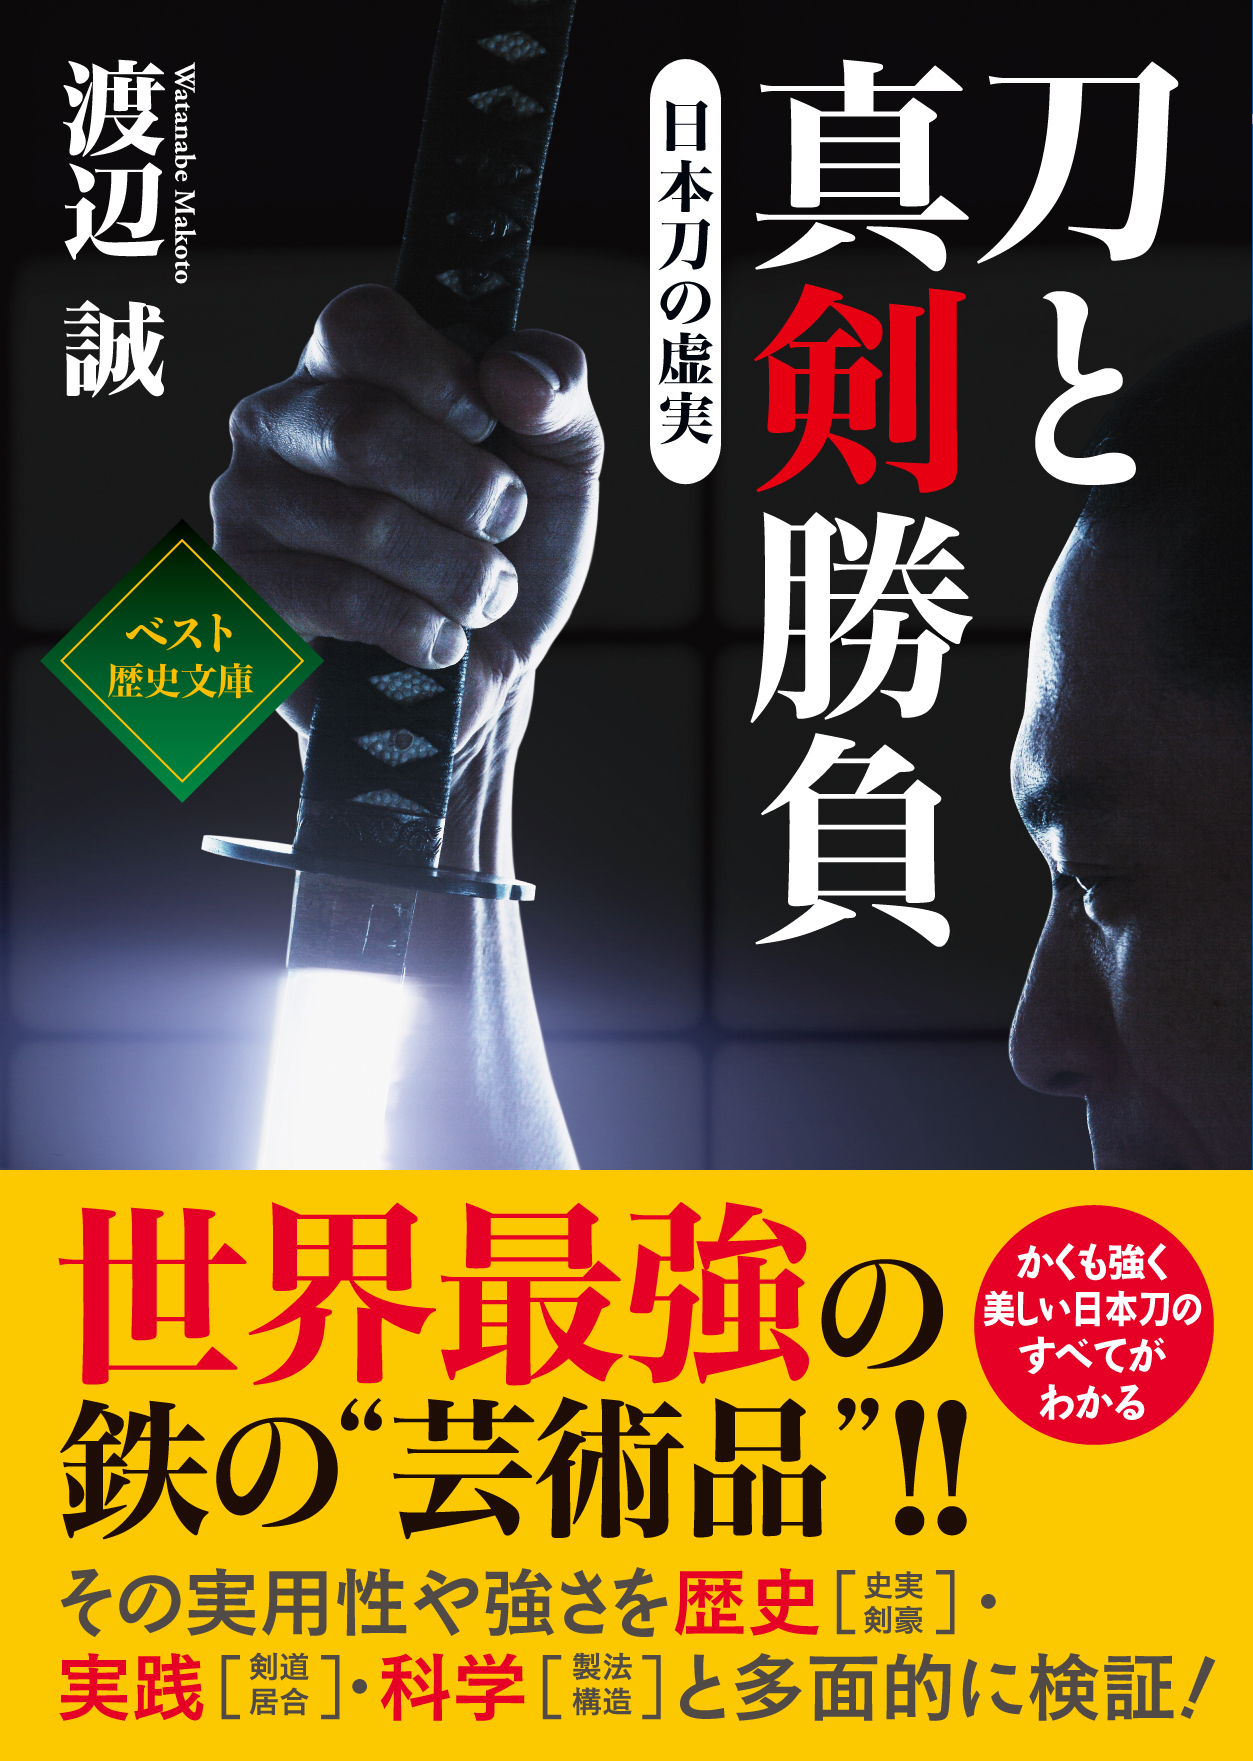 ワニ文庫『刀と真剣勝負』が奈良新聞にて、紹介されました。